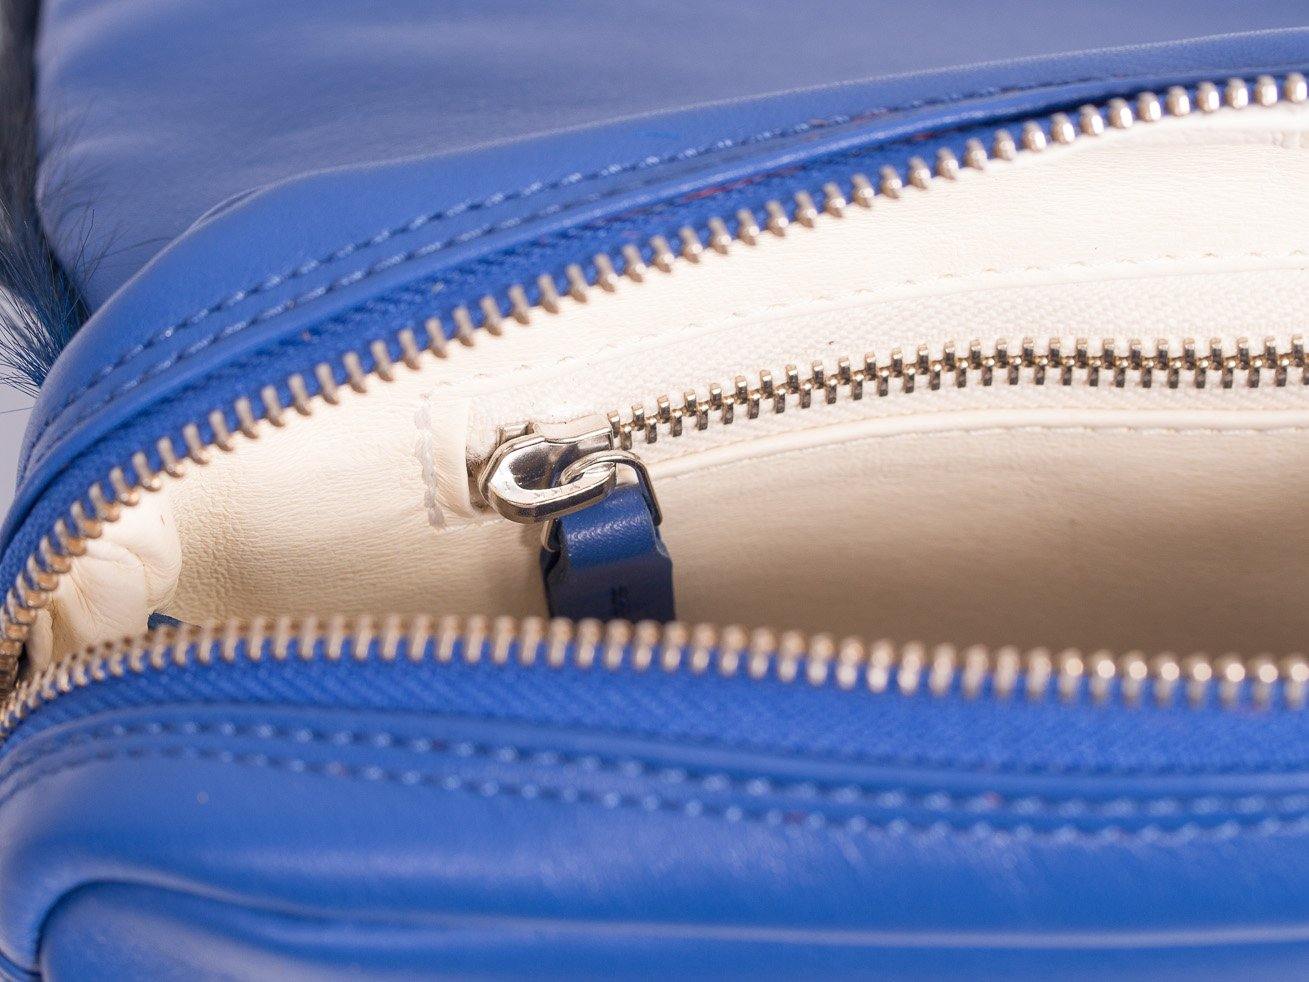 sherene melinda springbok hair-on-hide royal blue leather shoulder bag inside